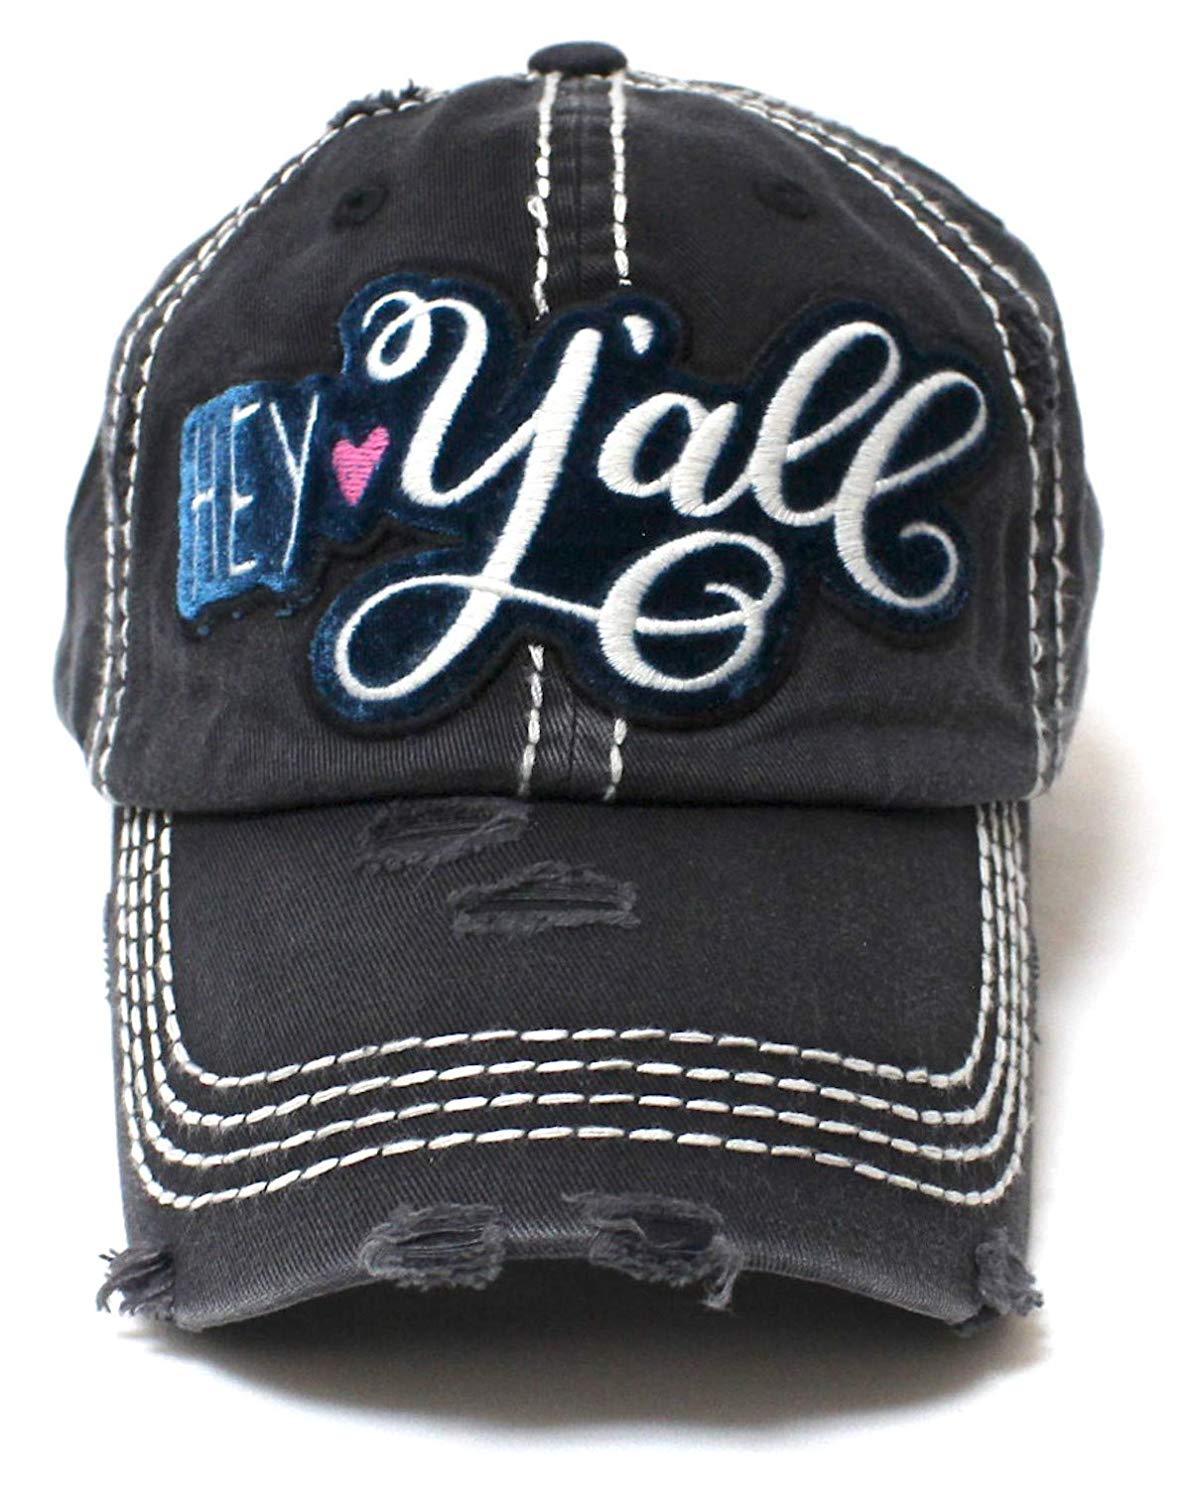 CAPS 'N VINTAGE New!! Black Hey Y'all Velvet Patch Emroidery Hat w/Heart Detail - Caps 'N Vintage 